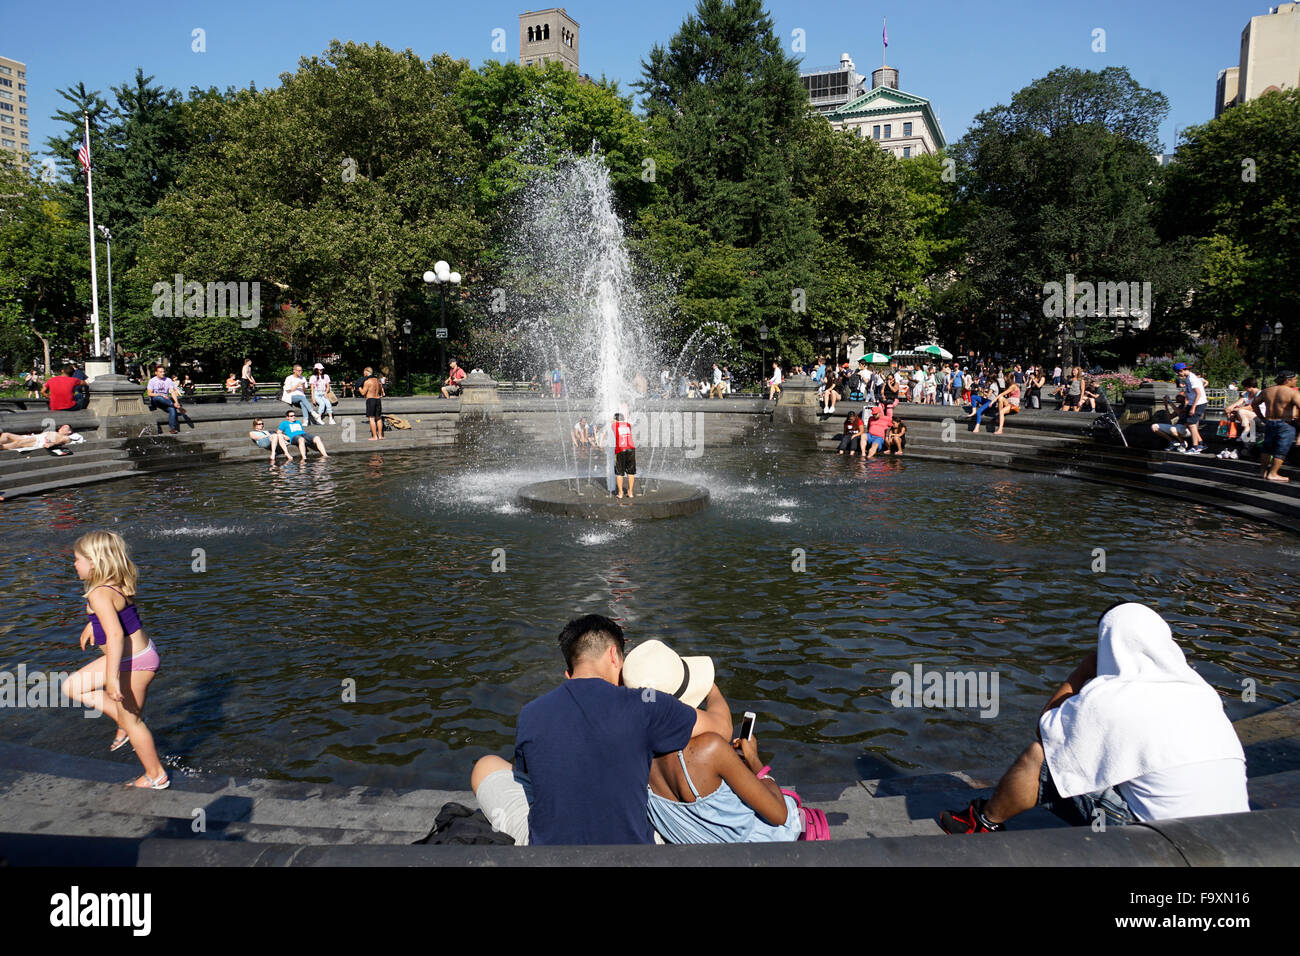 Visitatori relax presso la fontana centrale a Washington Square Park. Il Greenwich Village di New York City, Stati Uniti d'America Foto Stock